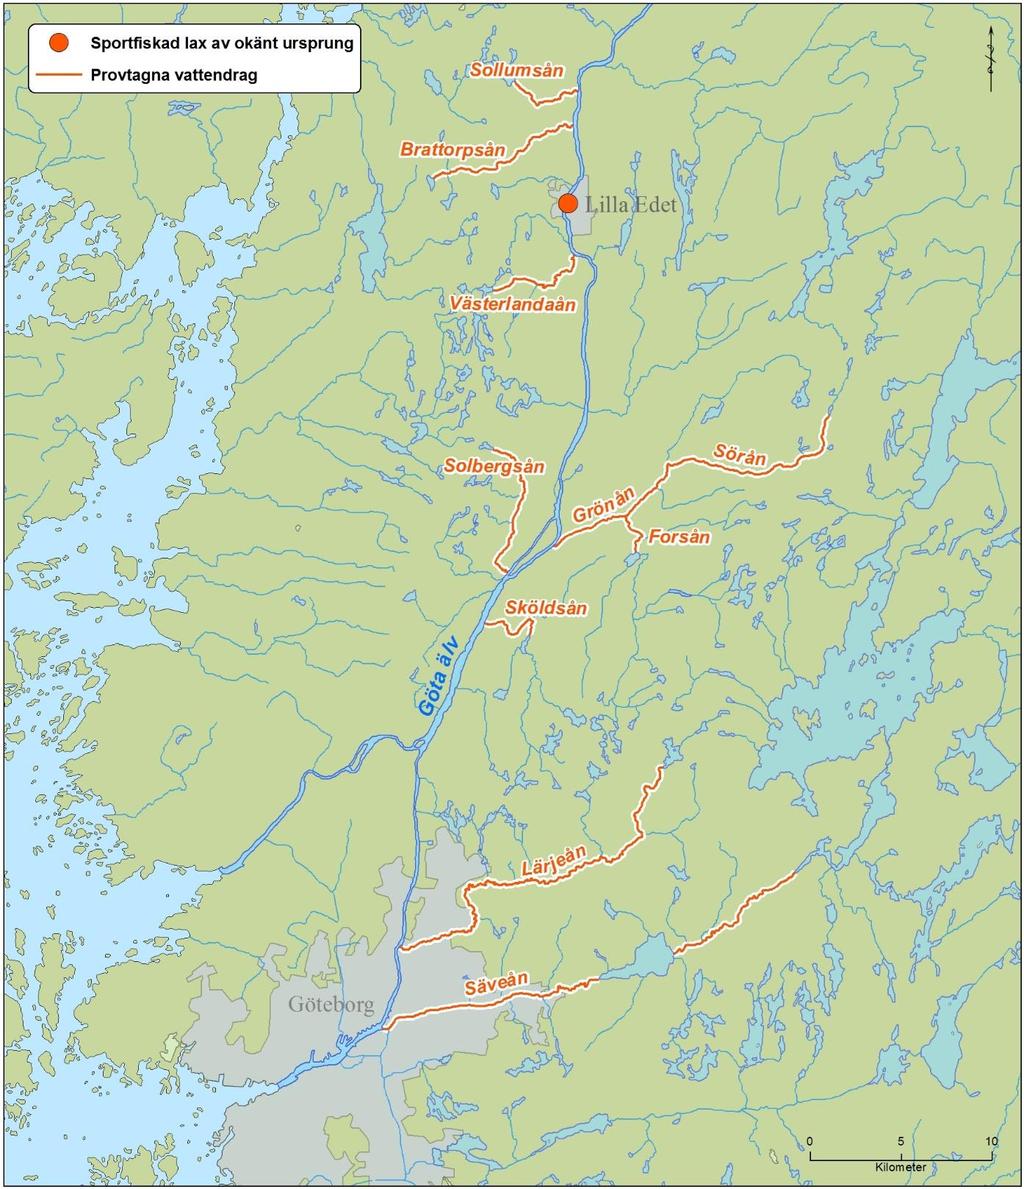 Figur 1. Karta över de provtagna vattendragen som används i referensdatabasen. I kartan är även Lilla Edet utmärkt där den oklippta laxen av okänt ursprung provtogs av sportfiskare.